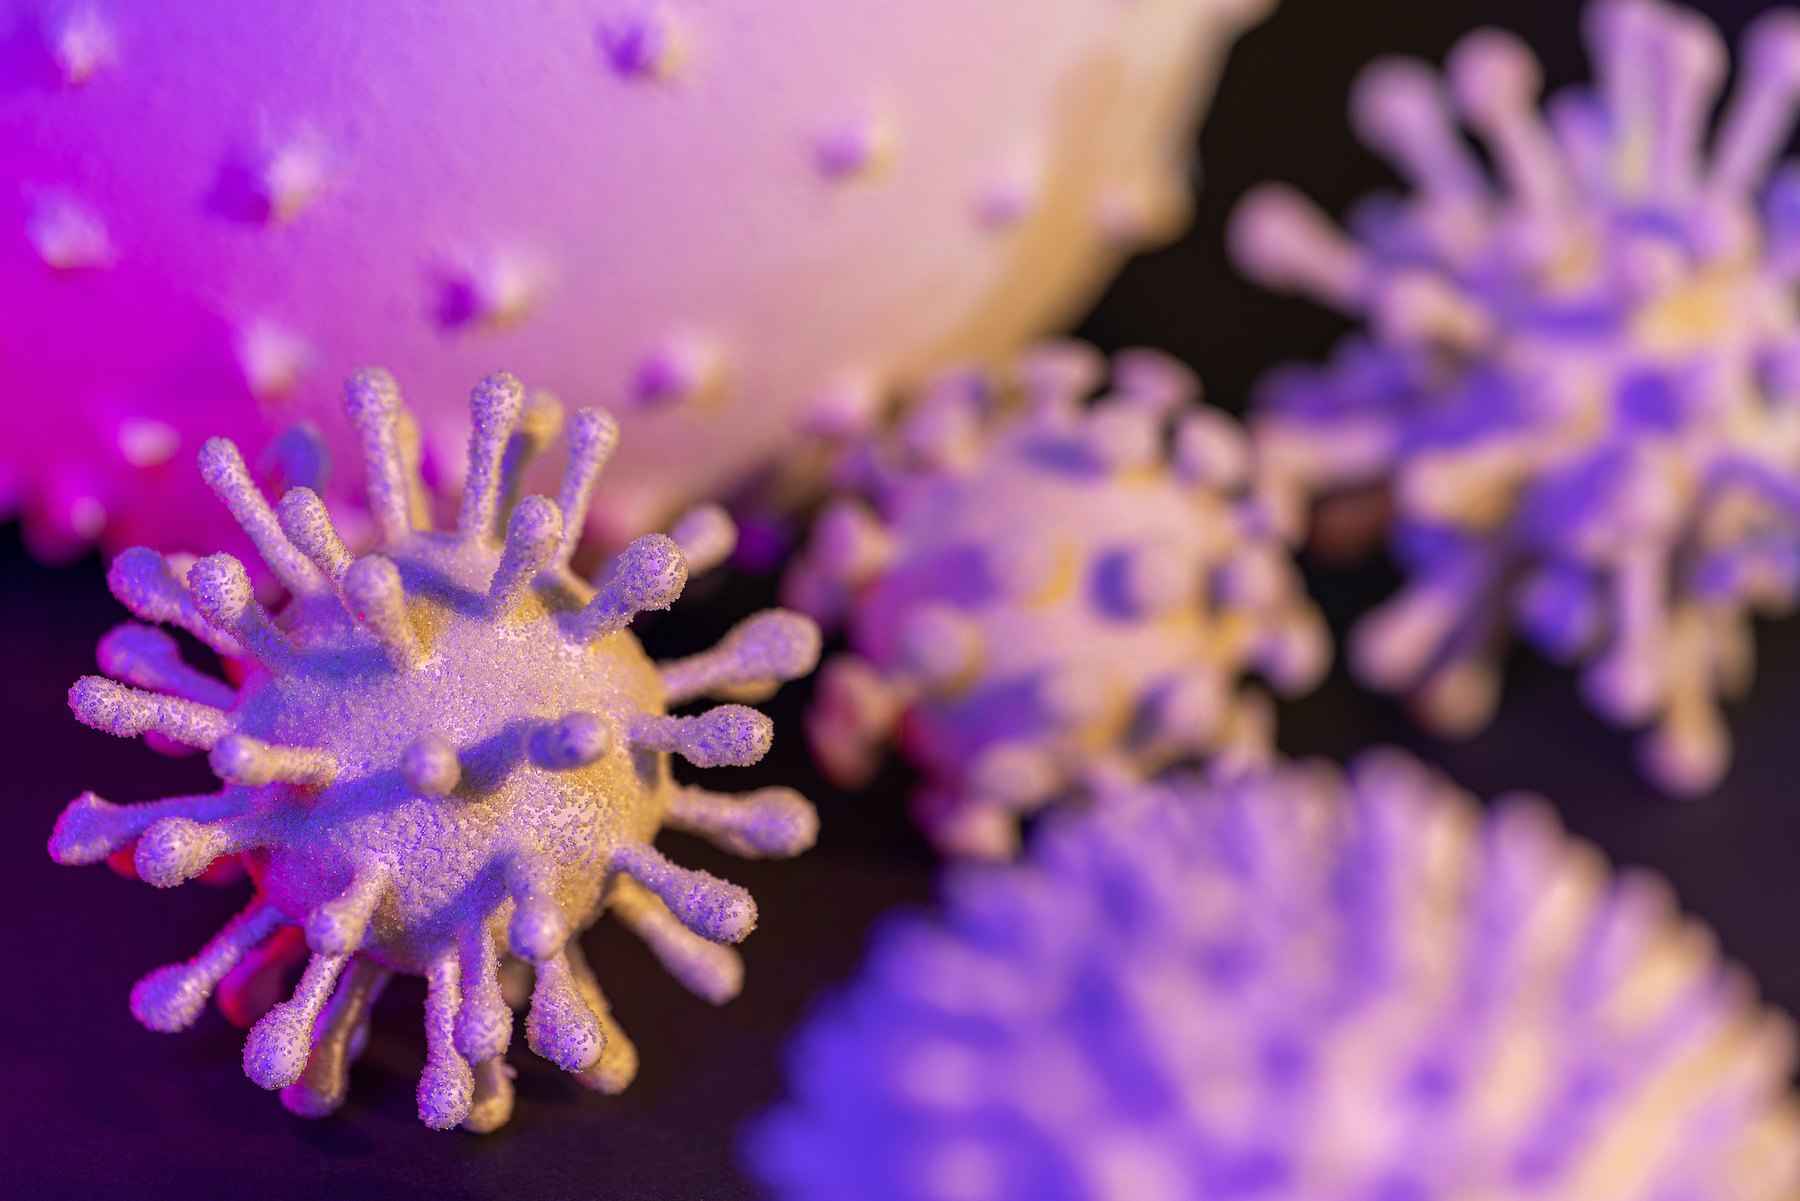 Les virus, des agents infectieux pouvant muter facilement. © prill Mediendesign, Adobe stock